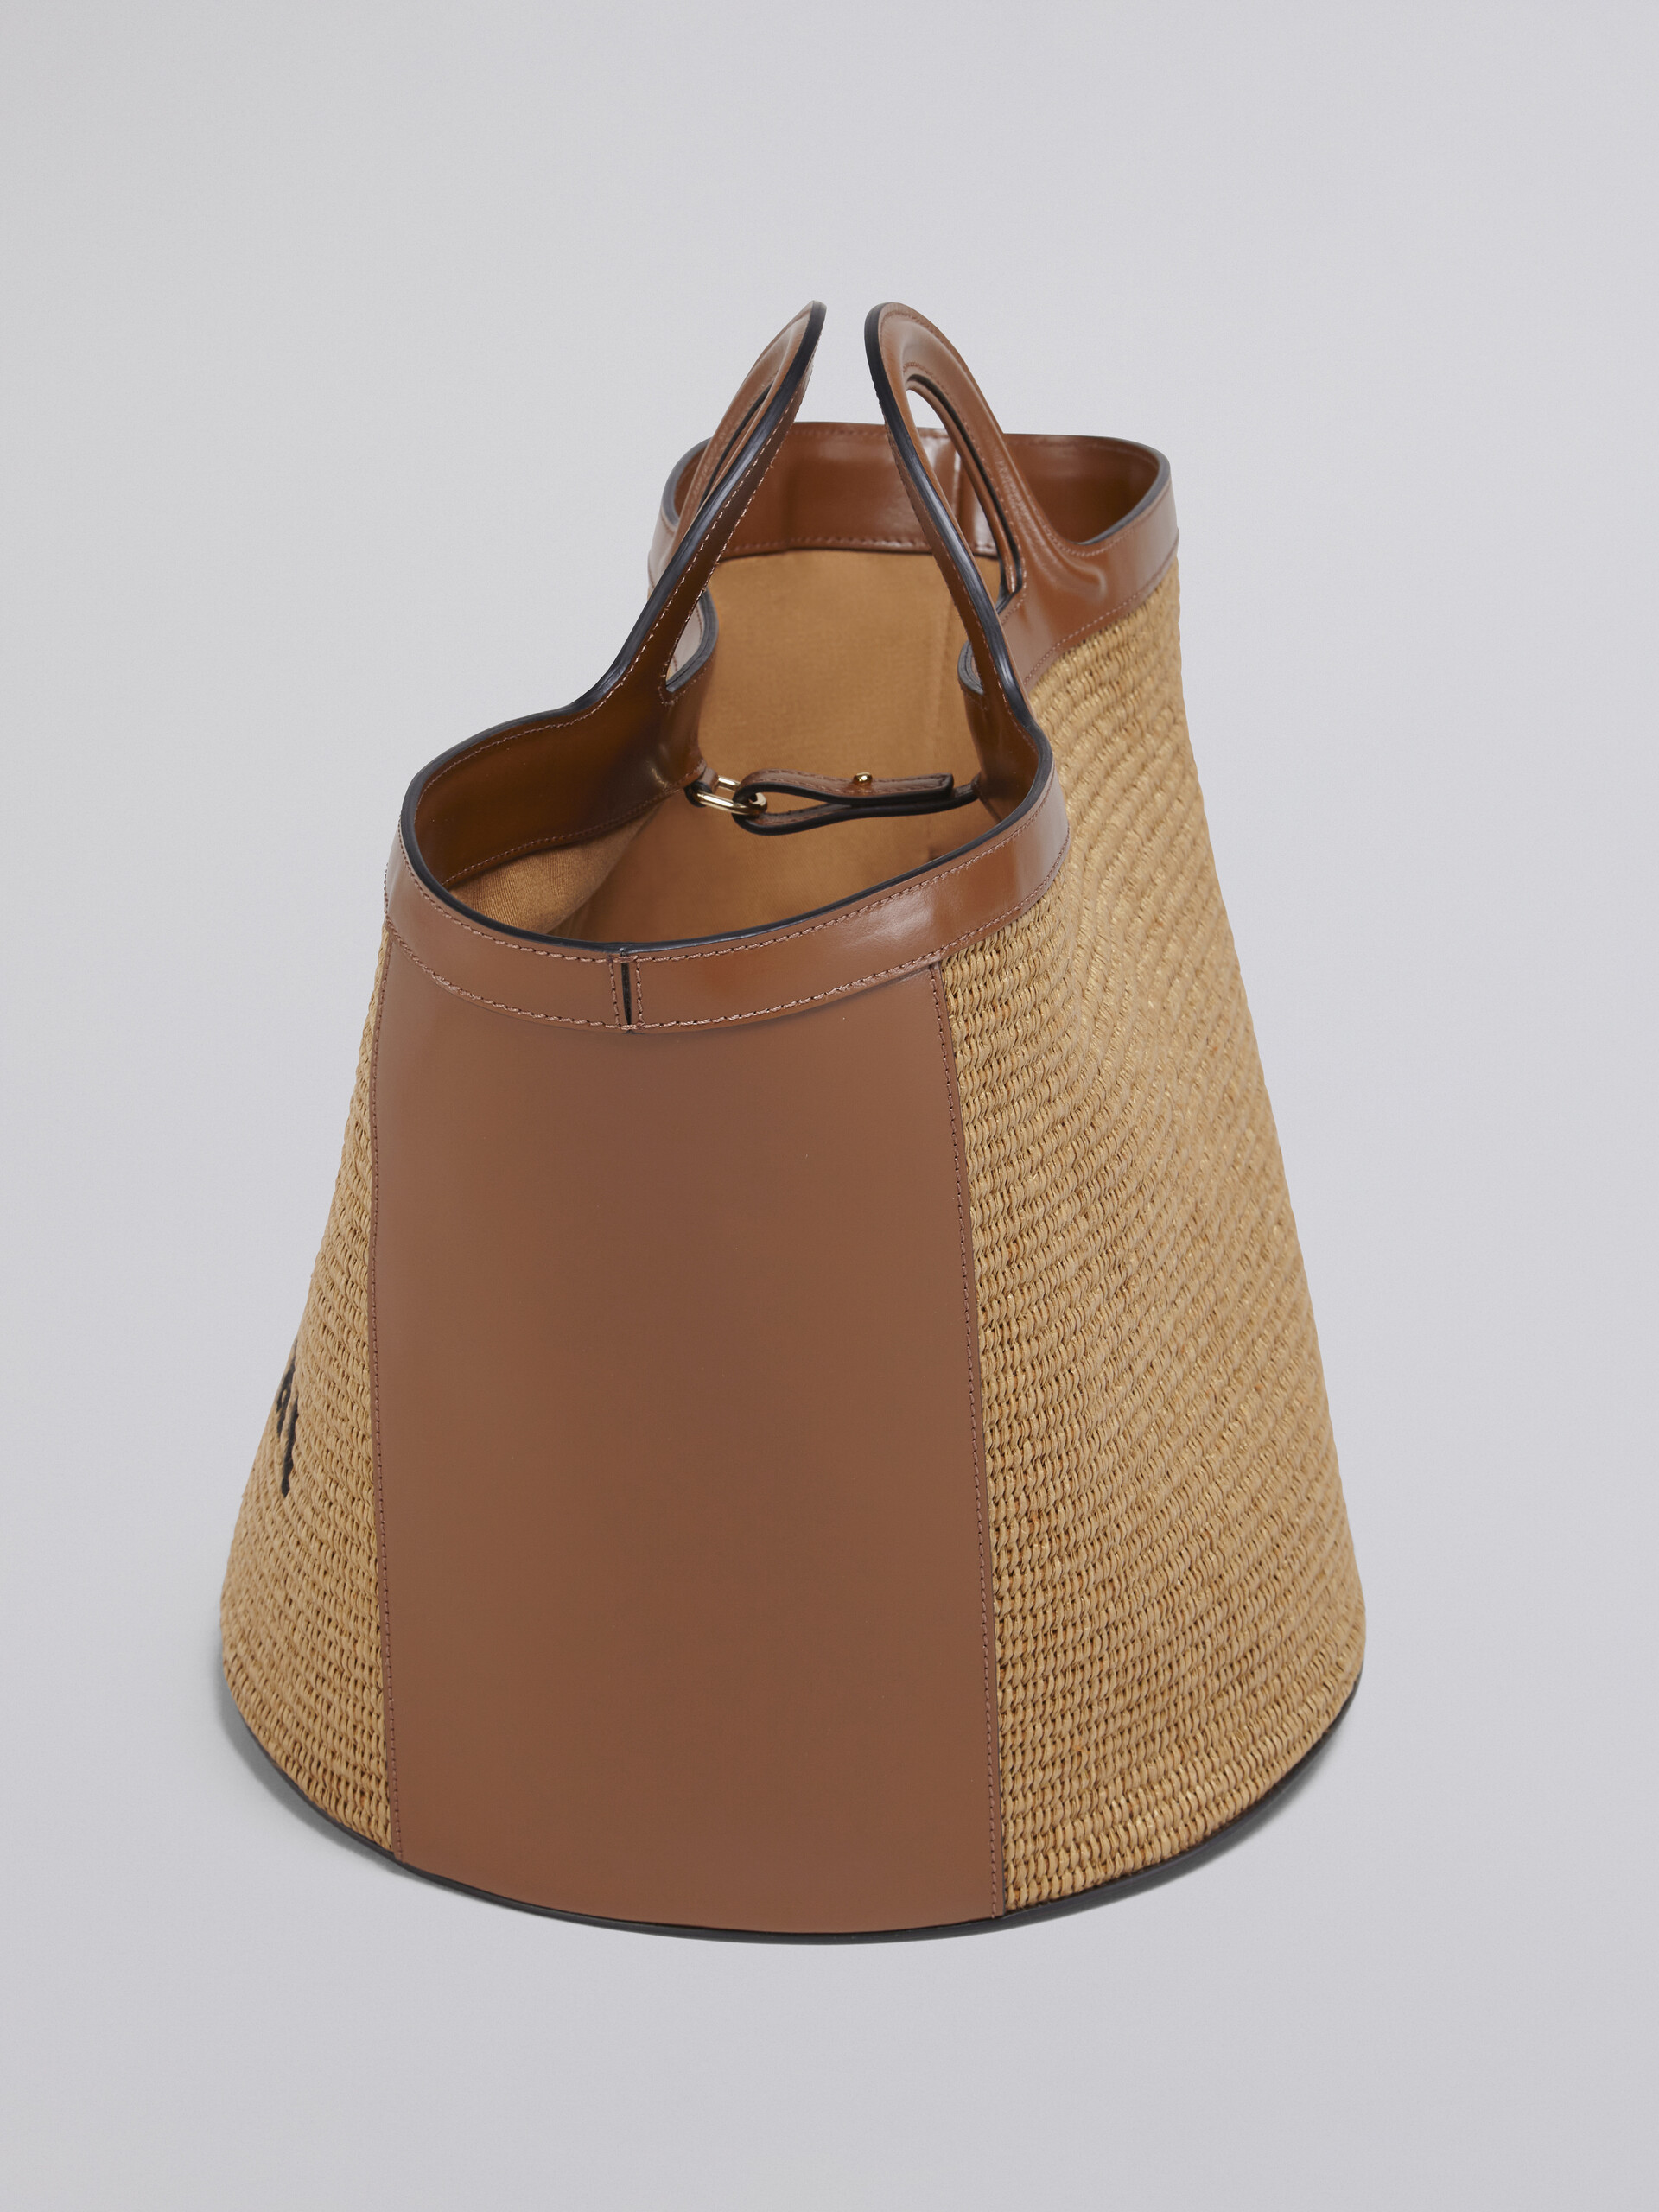 TROPICALIA bag grande in pelle e rafia marrone - Borse a mano - Image 5